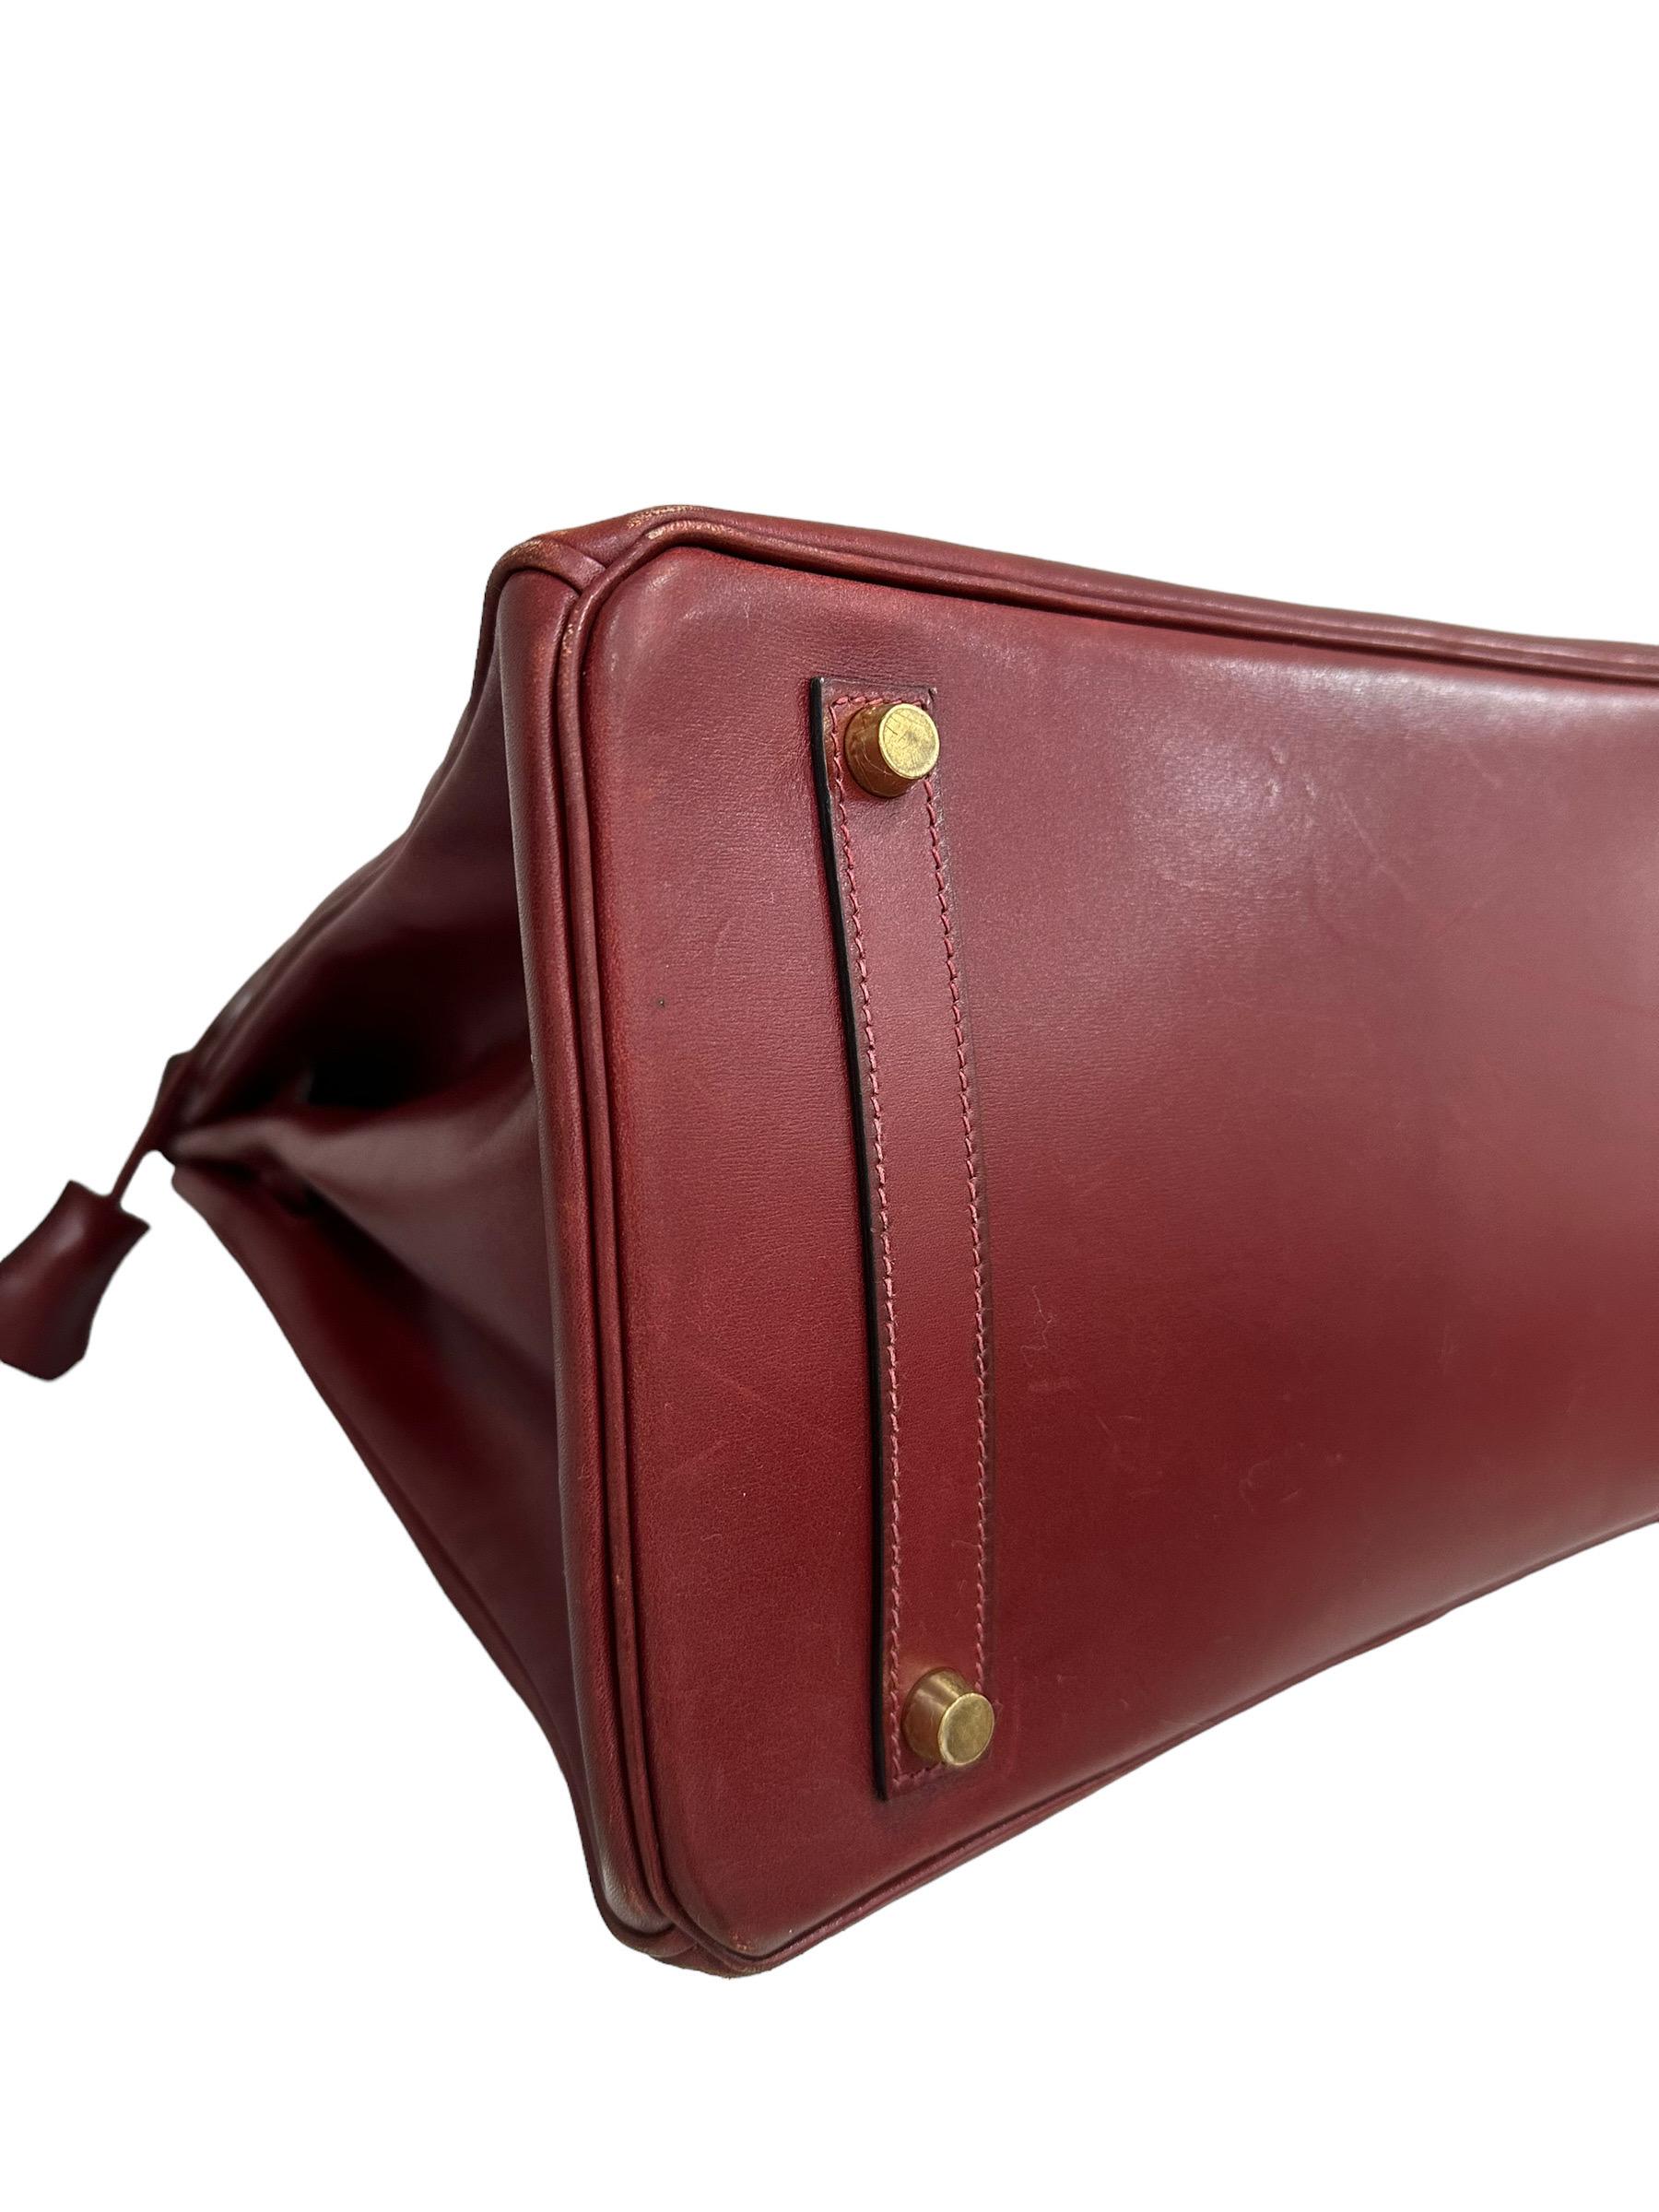 Hermès Birkin 35 Evercalf Rouge Garance Top Handle Bag 3